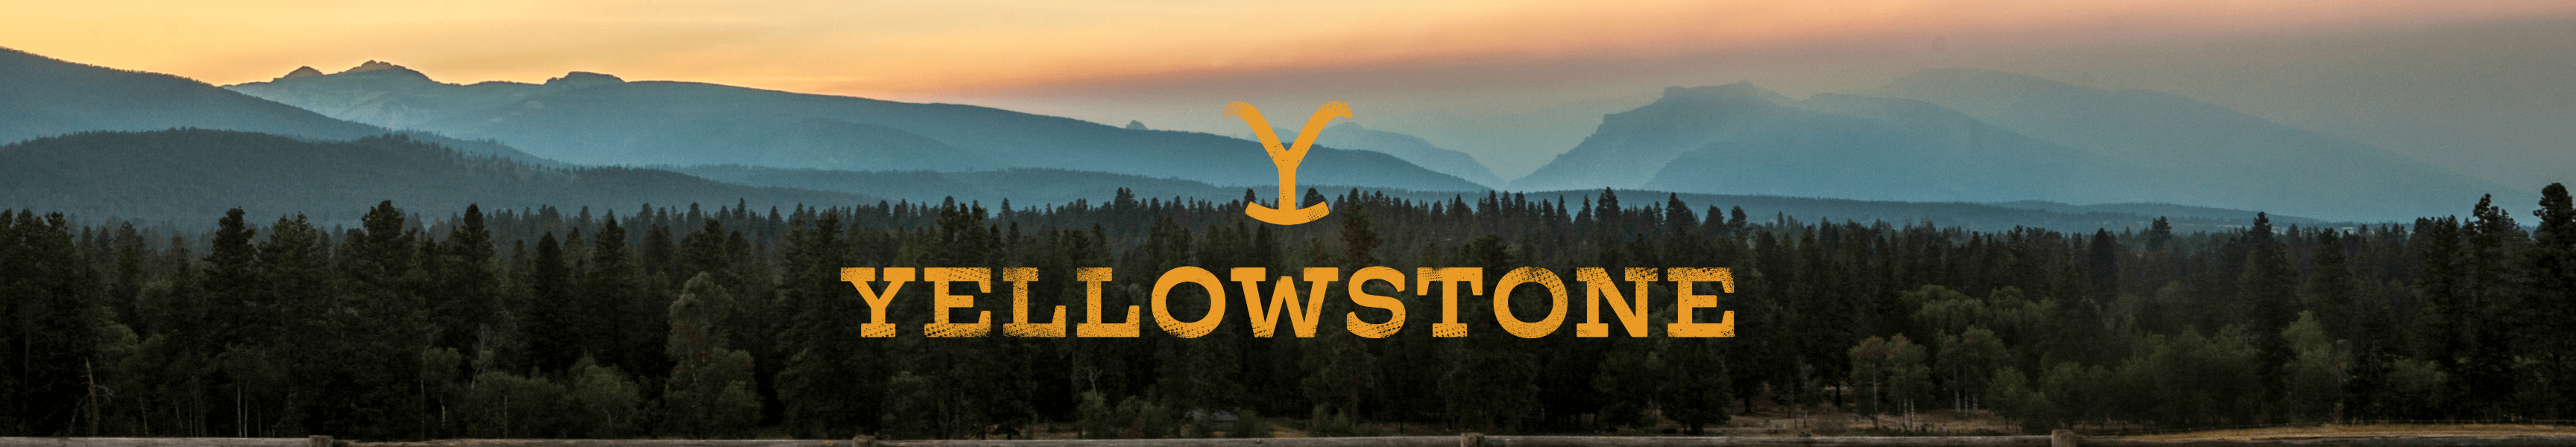 Yellowstone Meistverkaufte Produkte